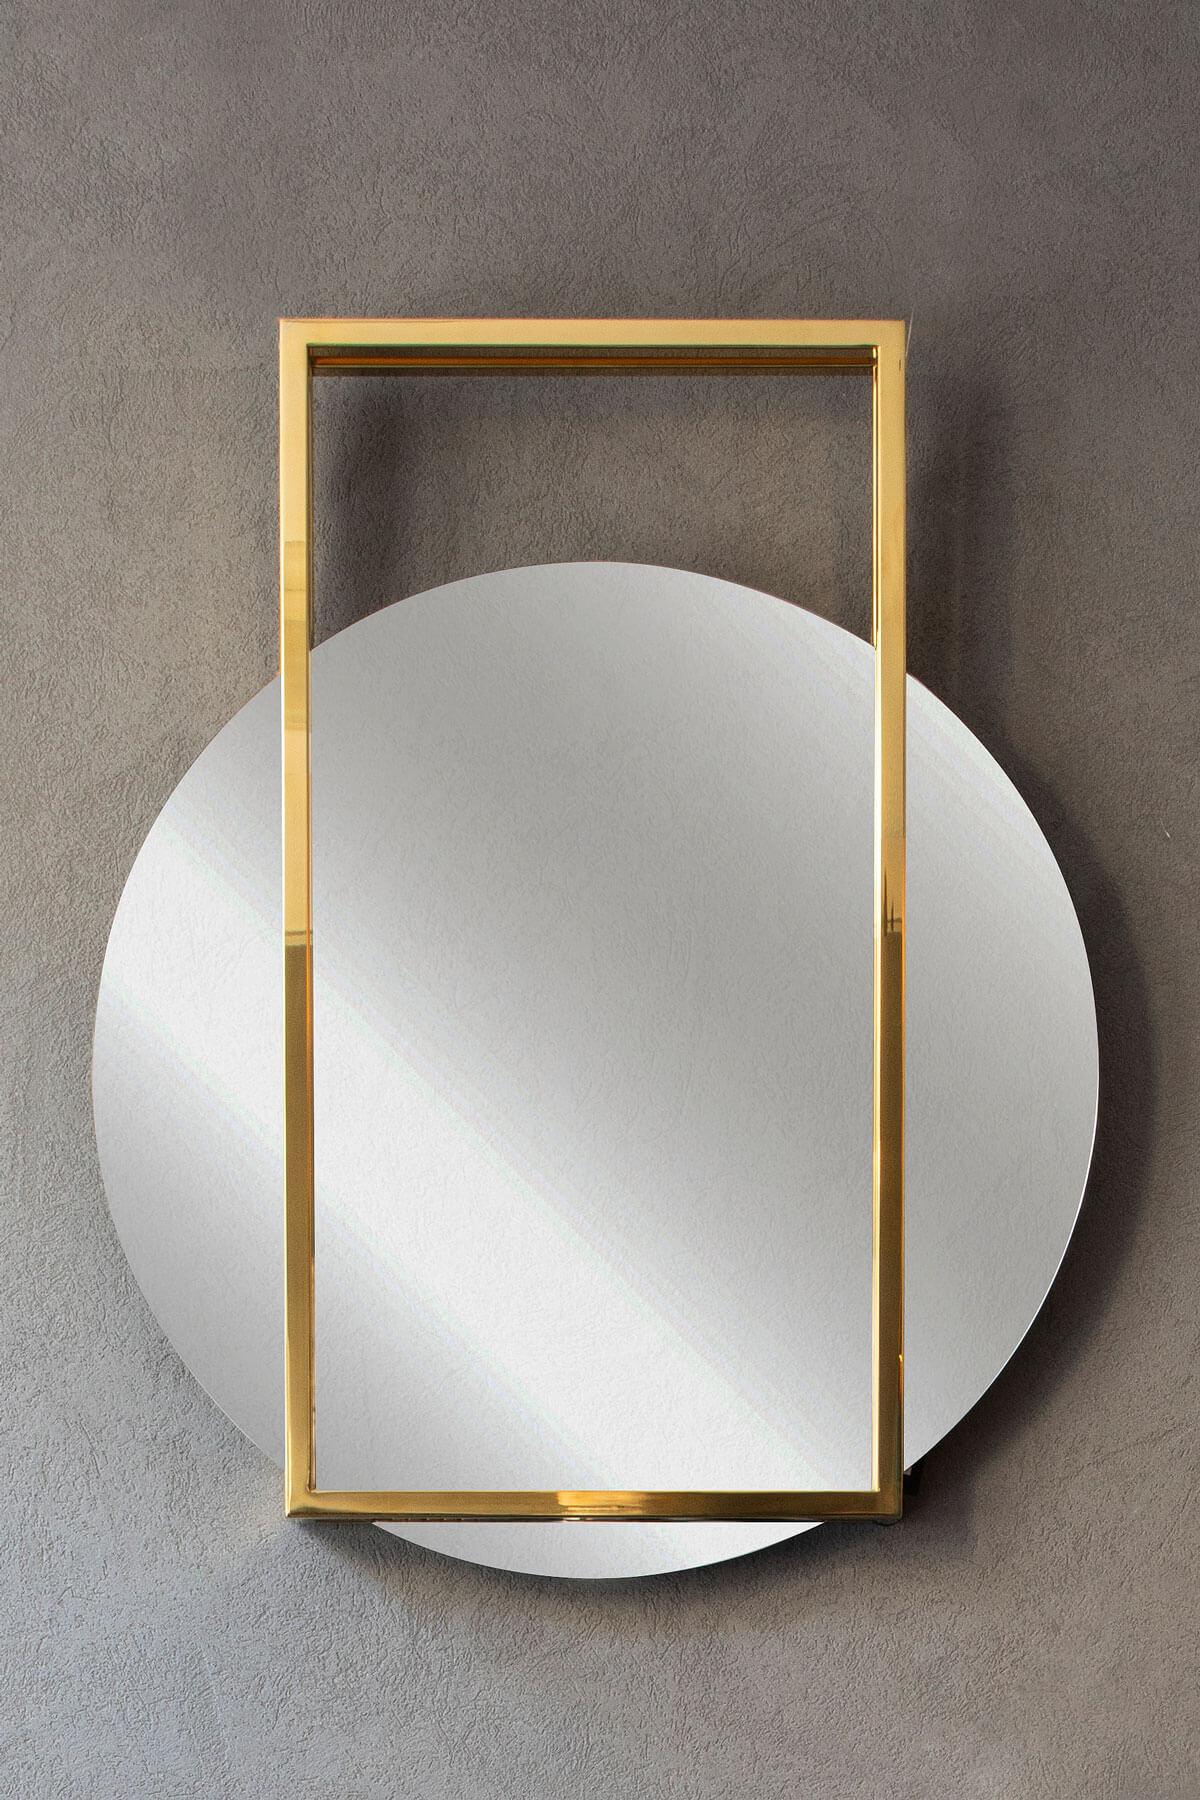 Le miroir Famed, qui sera le préféré des amateurs de géométrie, affiche une position esthétique avec son design élégant et minimal. Le miroir, qui peut être utilisé en harmonie avec la console Famed, est l'une des options brillantes de la collection